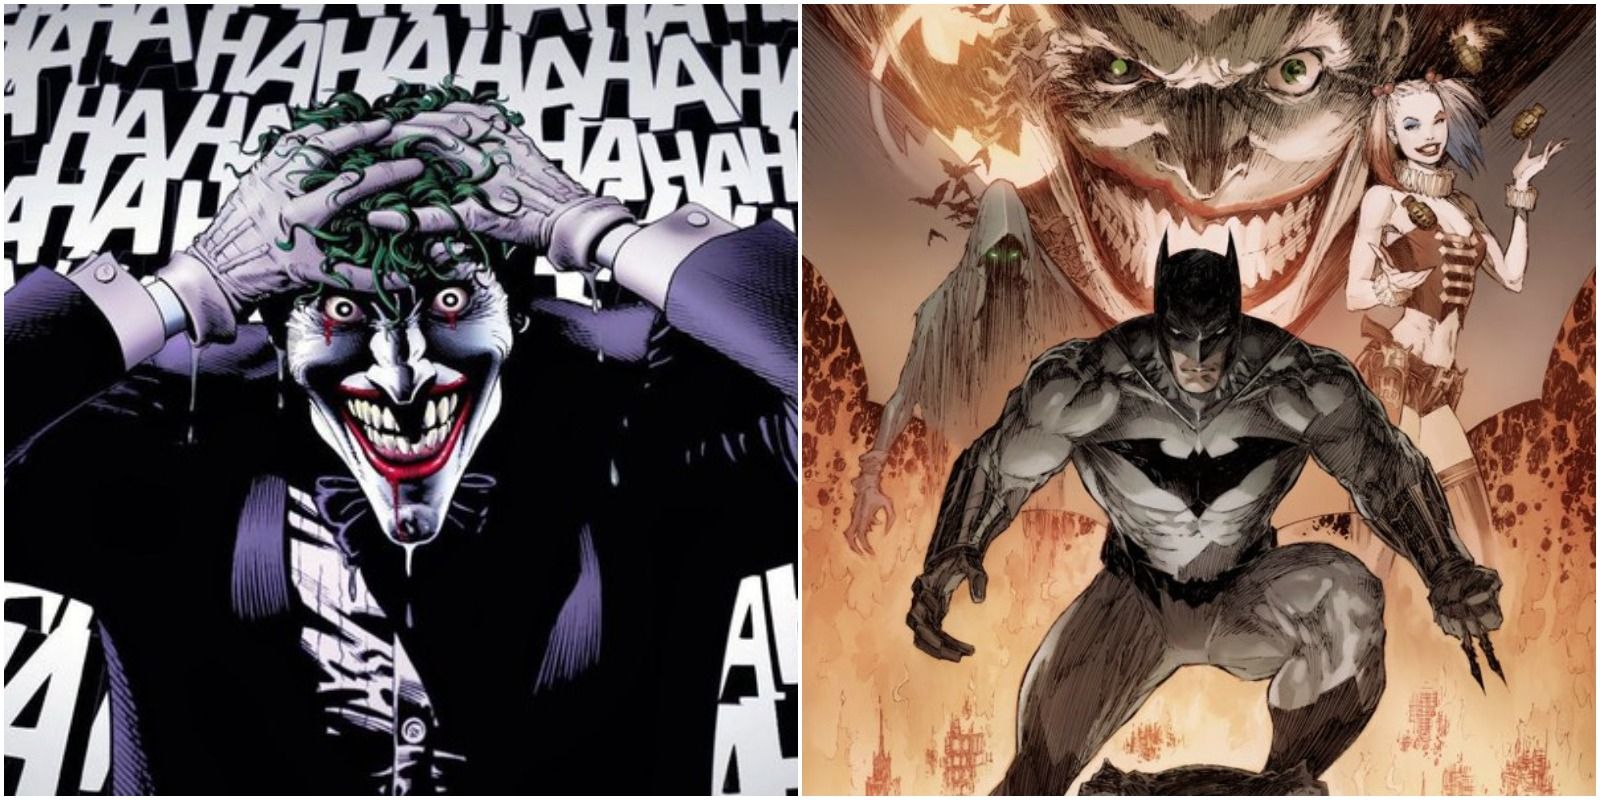 The Joker in Alan Moore's The Killing Joker and cover art for Marc Silvestri's upcoming Batman/Joker: The Deadly Duo